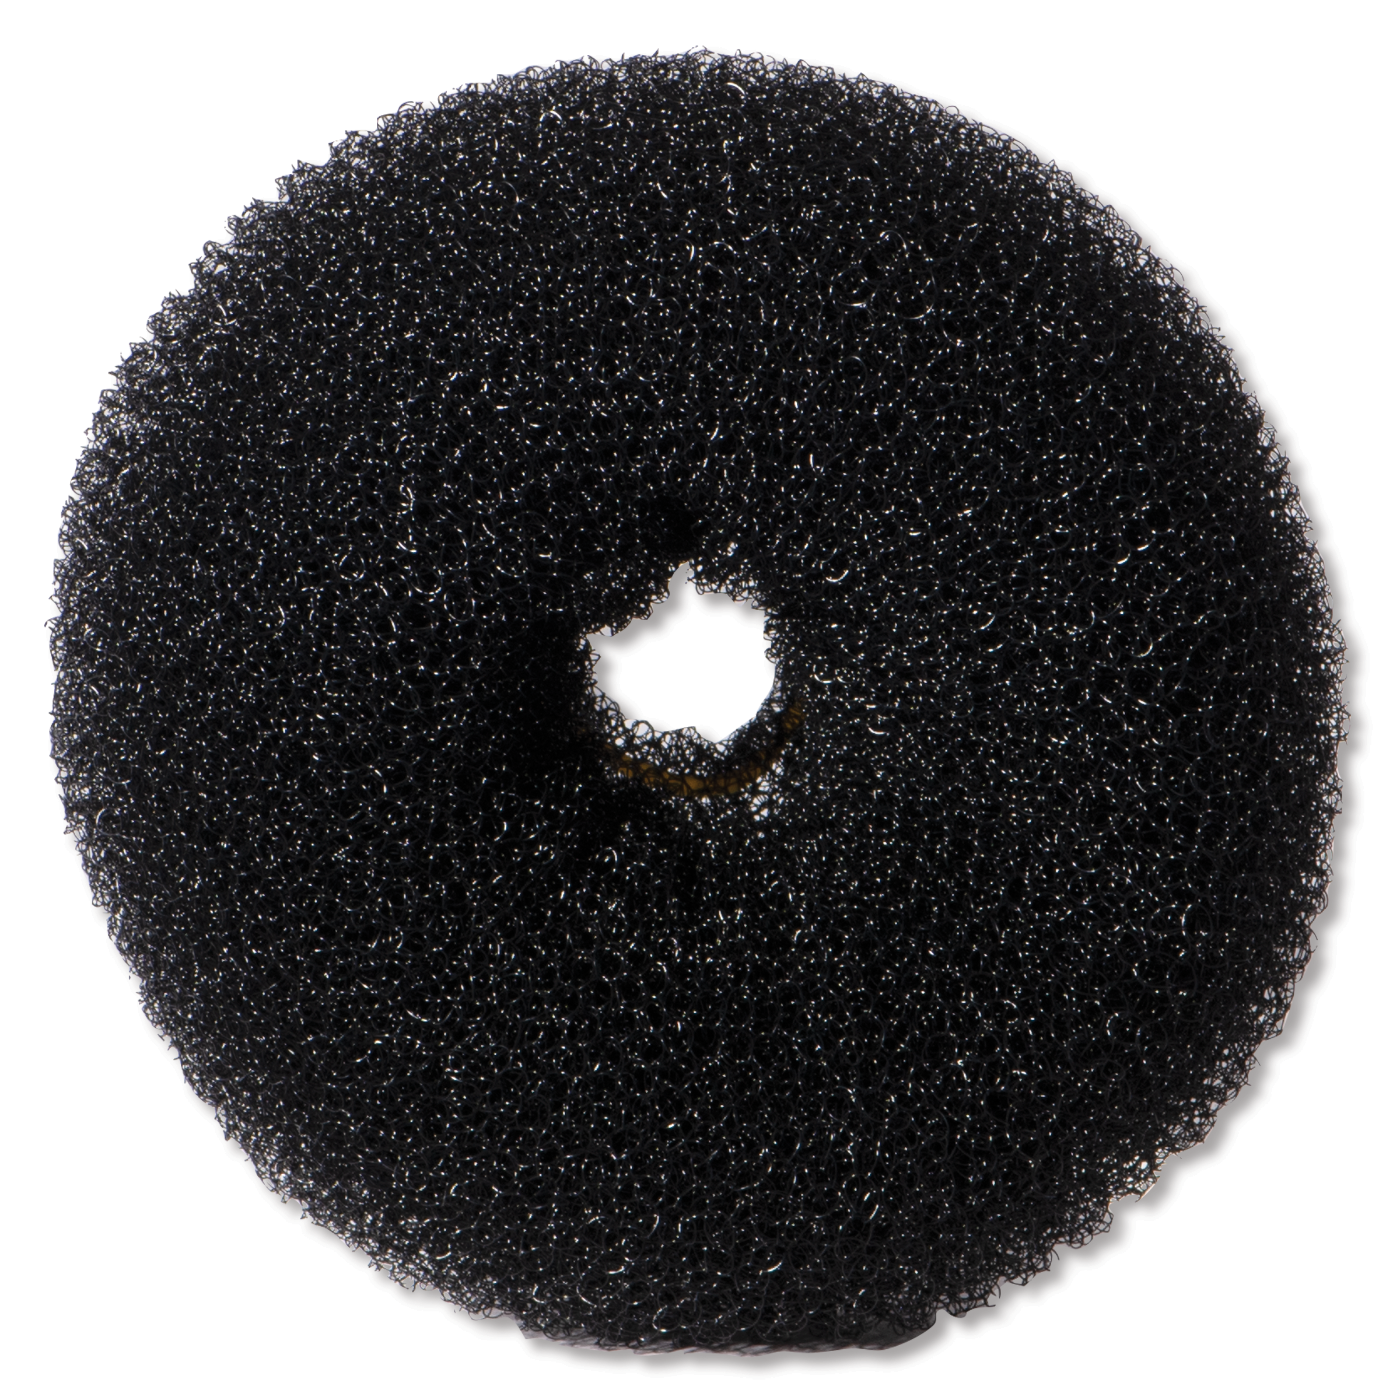 Hair Donut, Black - 4-1/4"